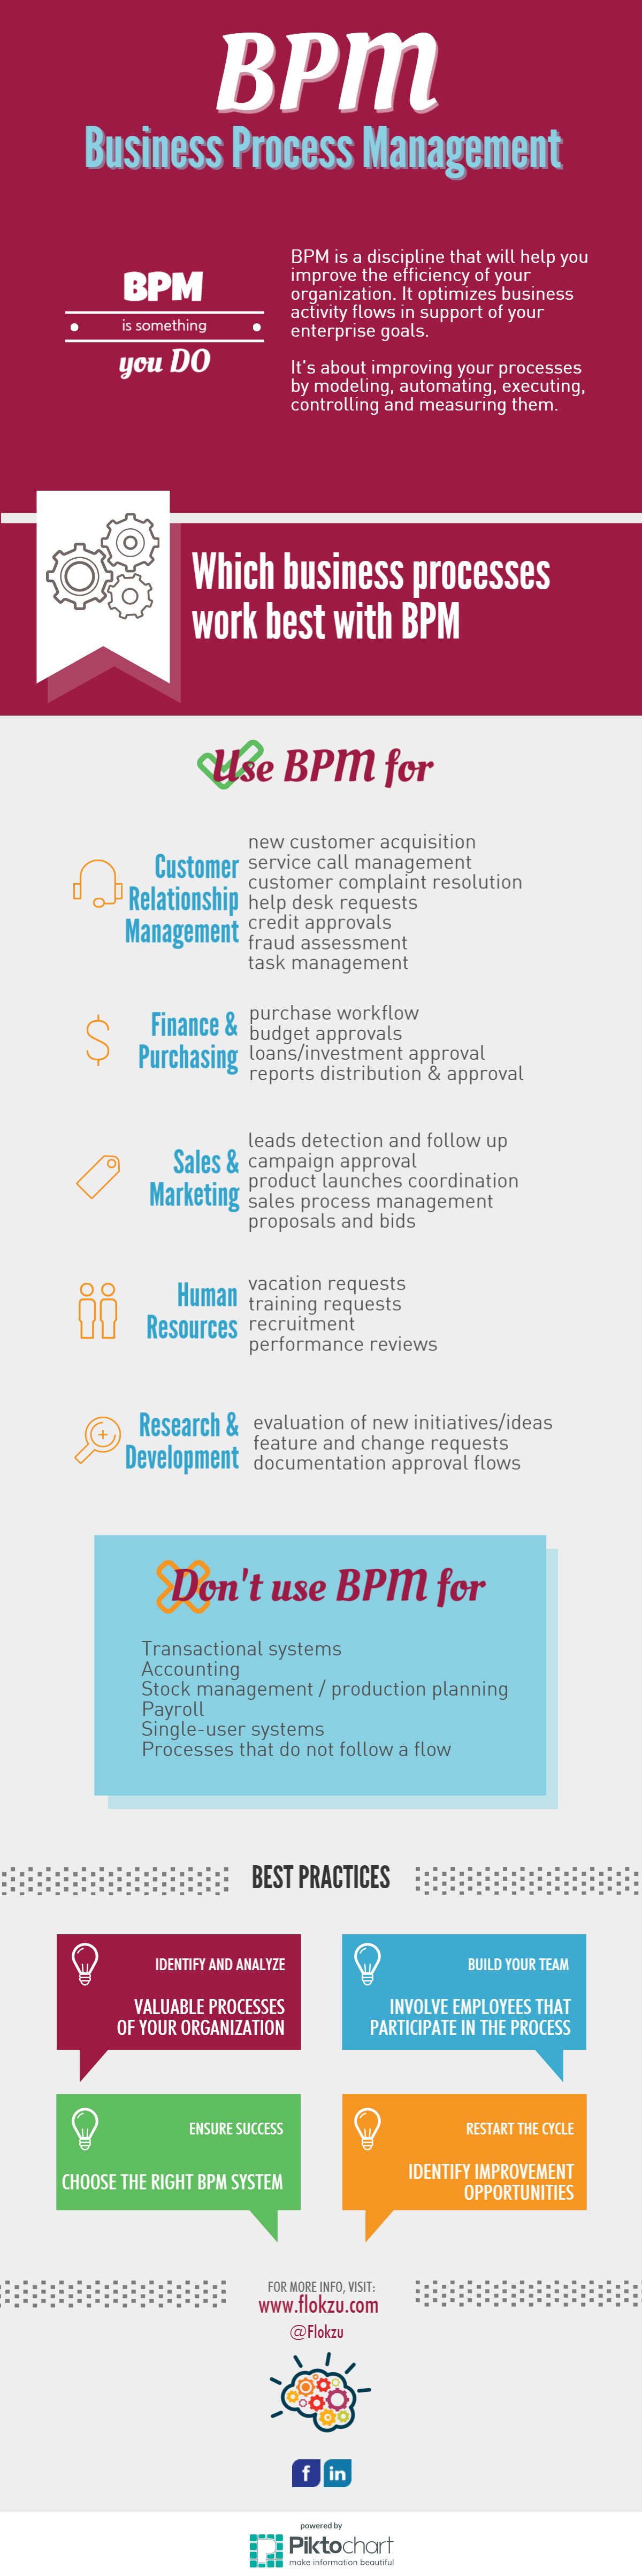 BPM infographic